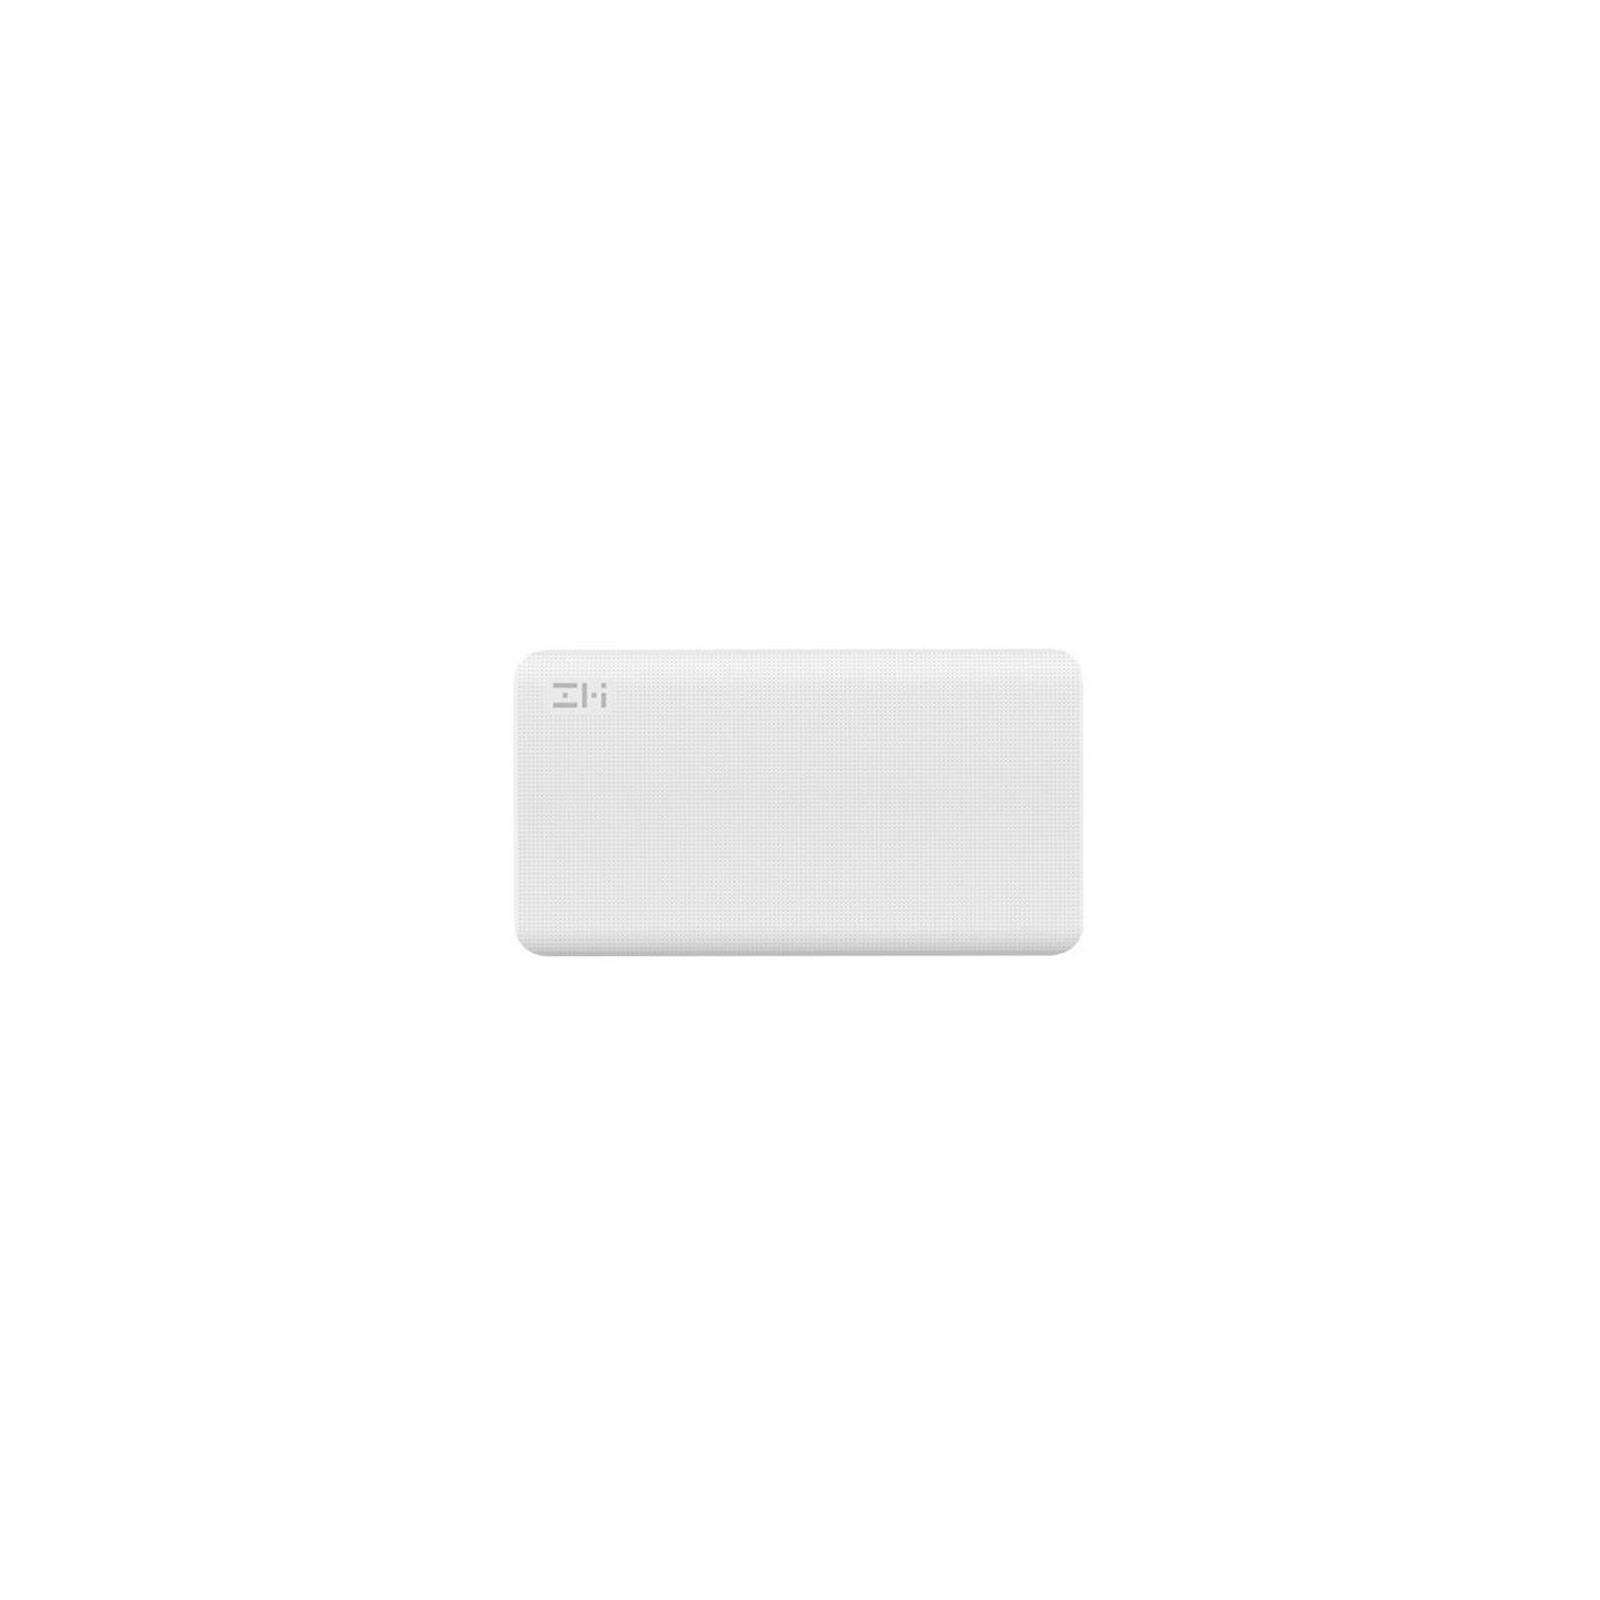 Батарея универсальная ZMI QB810 10000mAh Type-C White (Quick Charge 2.0) (QB810-WH) изображение 2